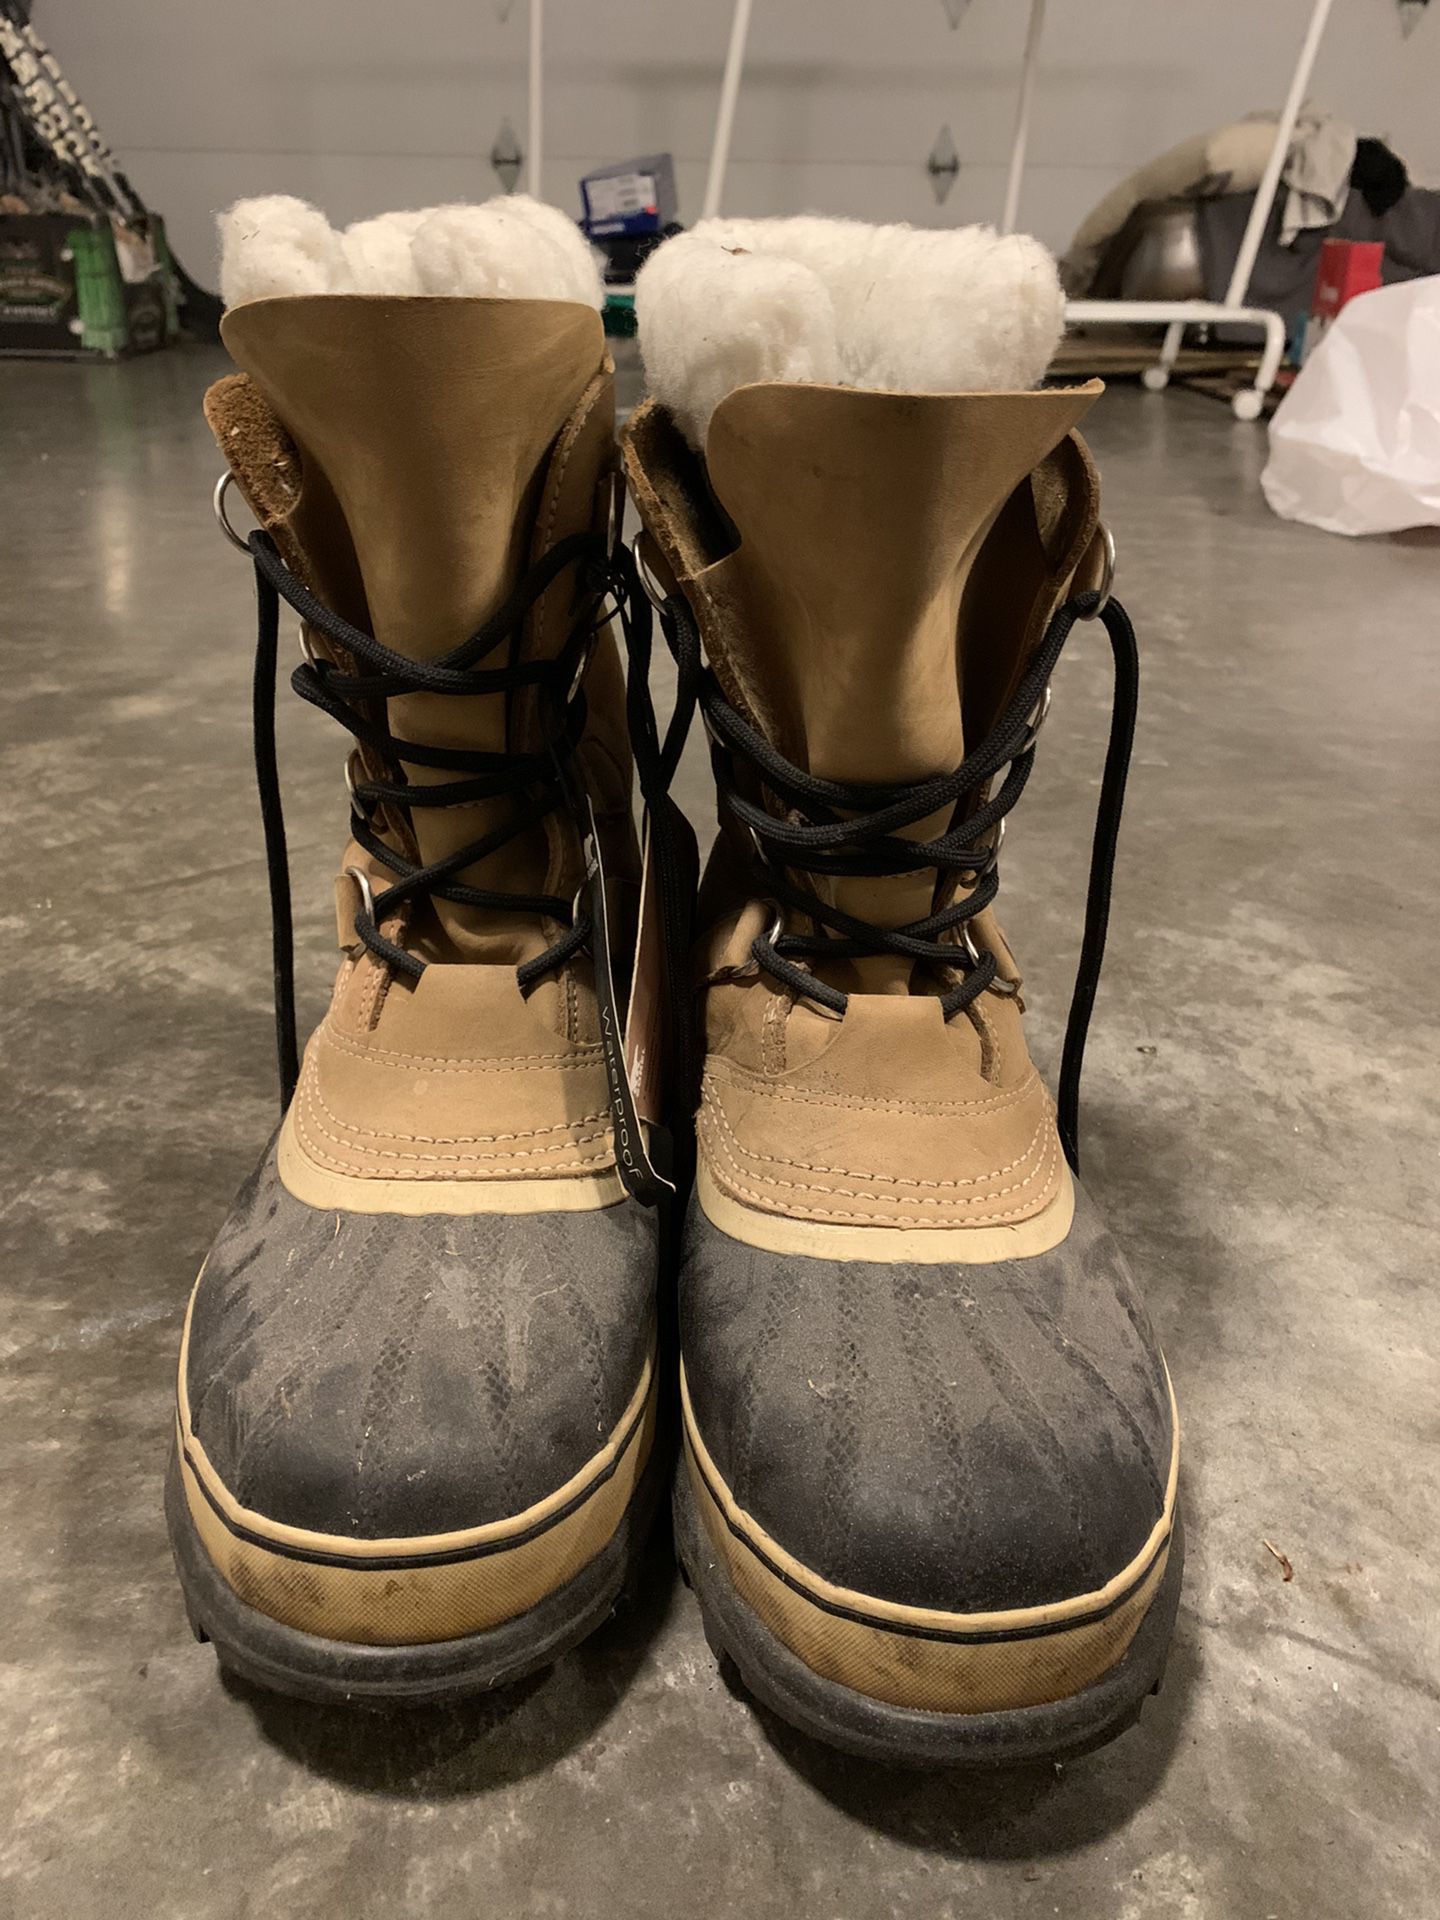 Men’s Sorel Boots Size 9.5. Tag still on!